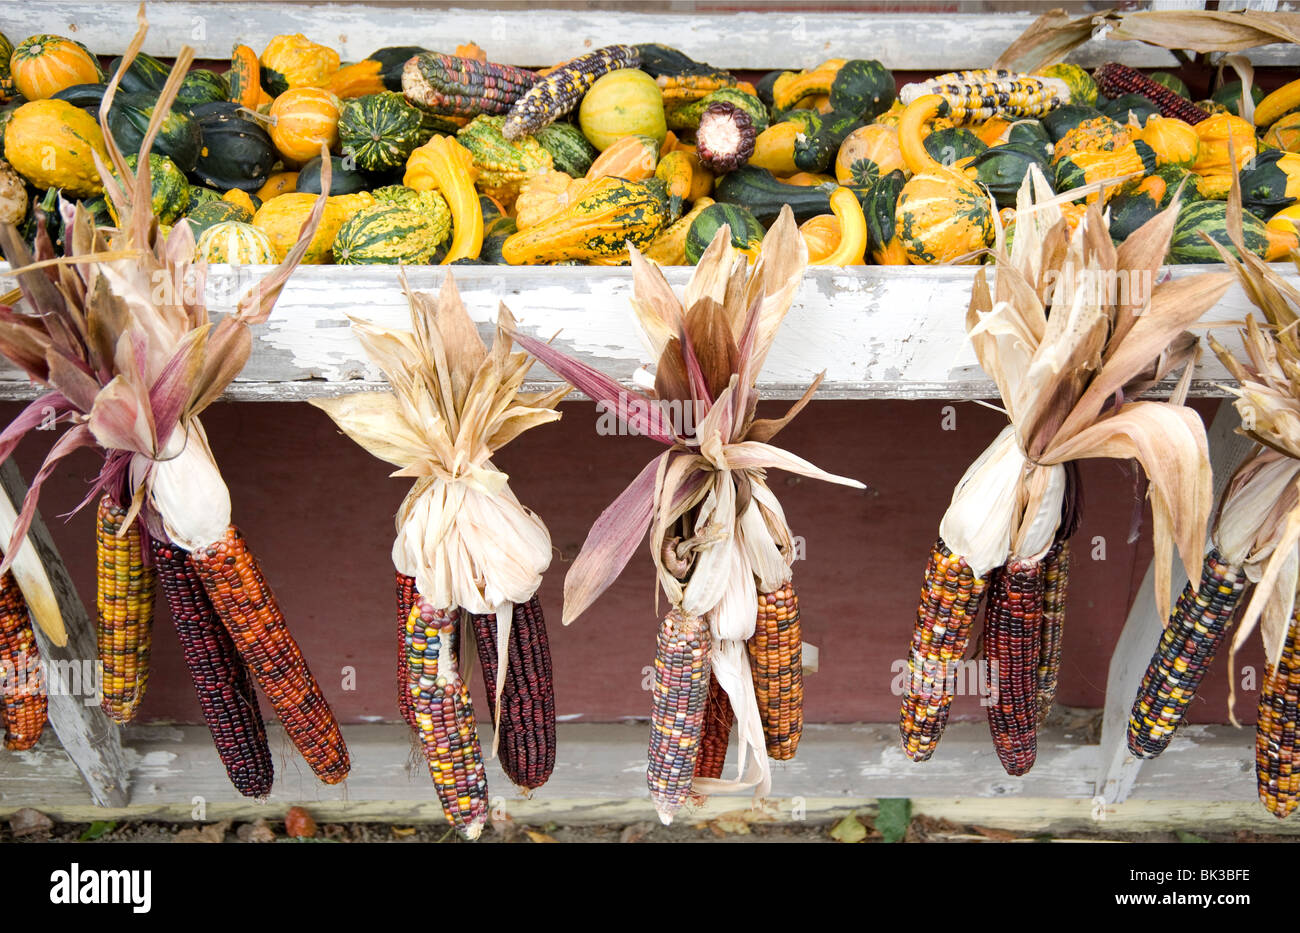 Le maïs et les courges en vente sur l'éventaire dans le Massachusetts, New England, États-Unis d'Amérique, Amérique du Nord Banque D'Images